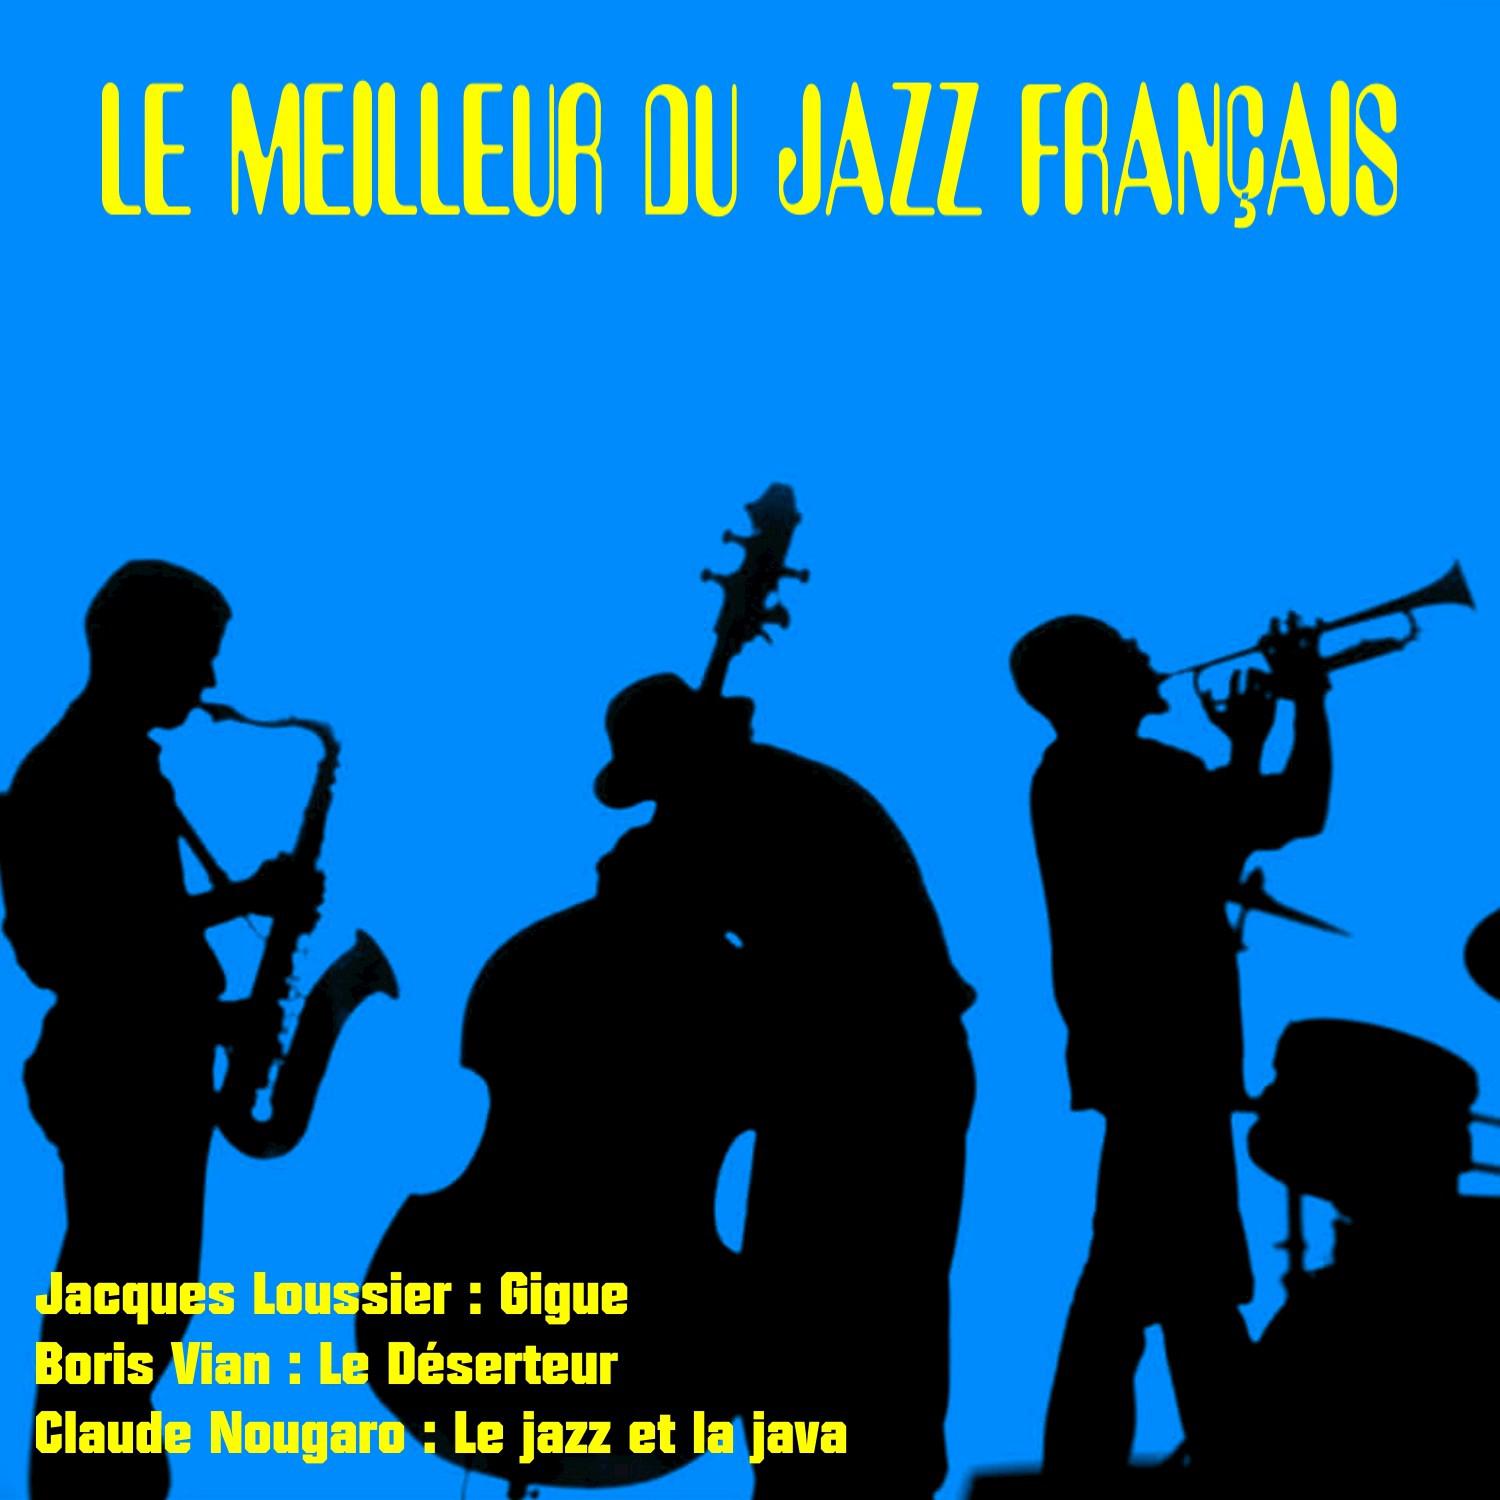 Le meilleur du jazz francais